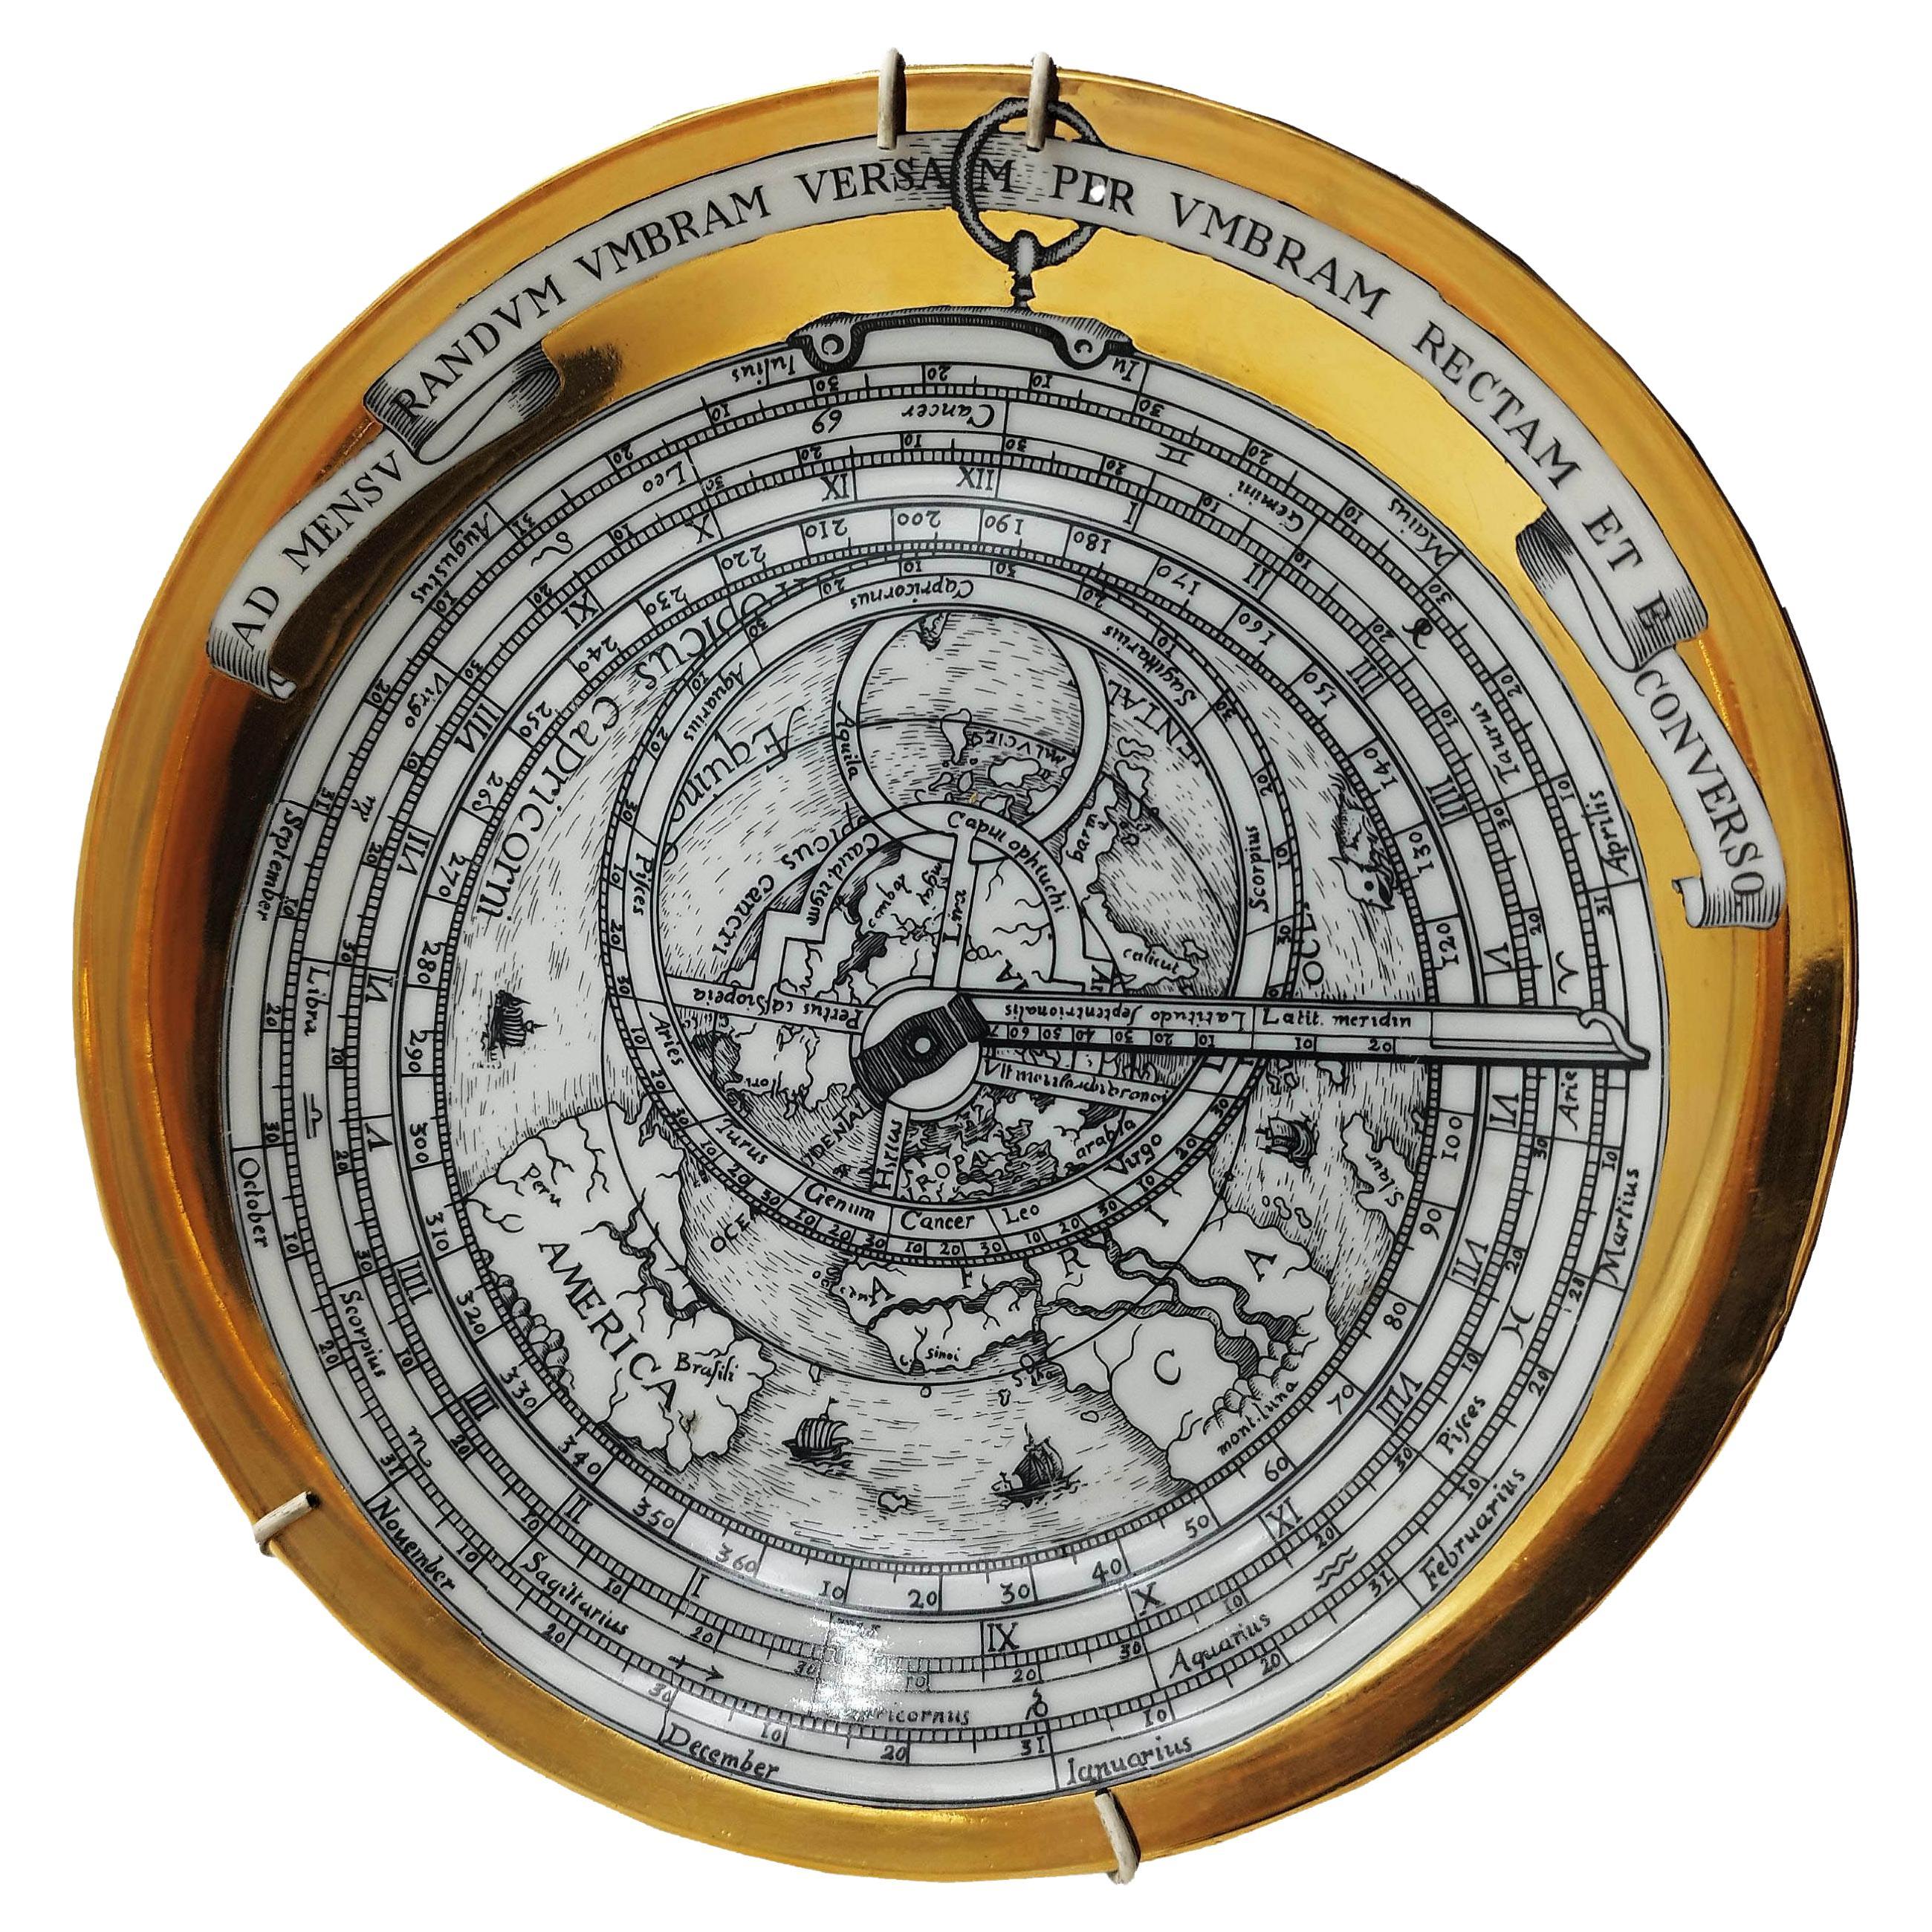 Assiette en porcelaine Astrolabe de Piero Fornasetti, 1968